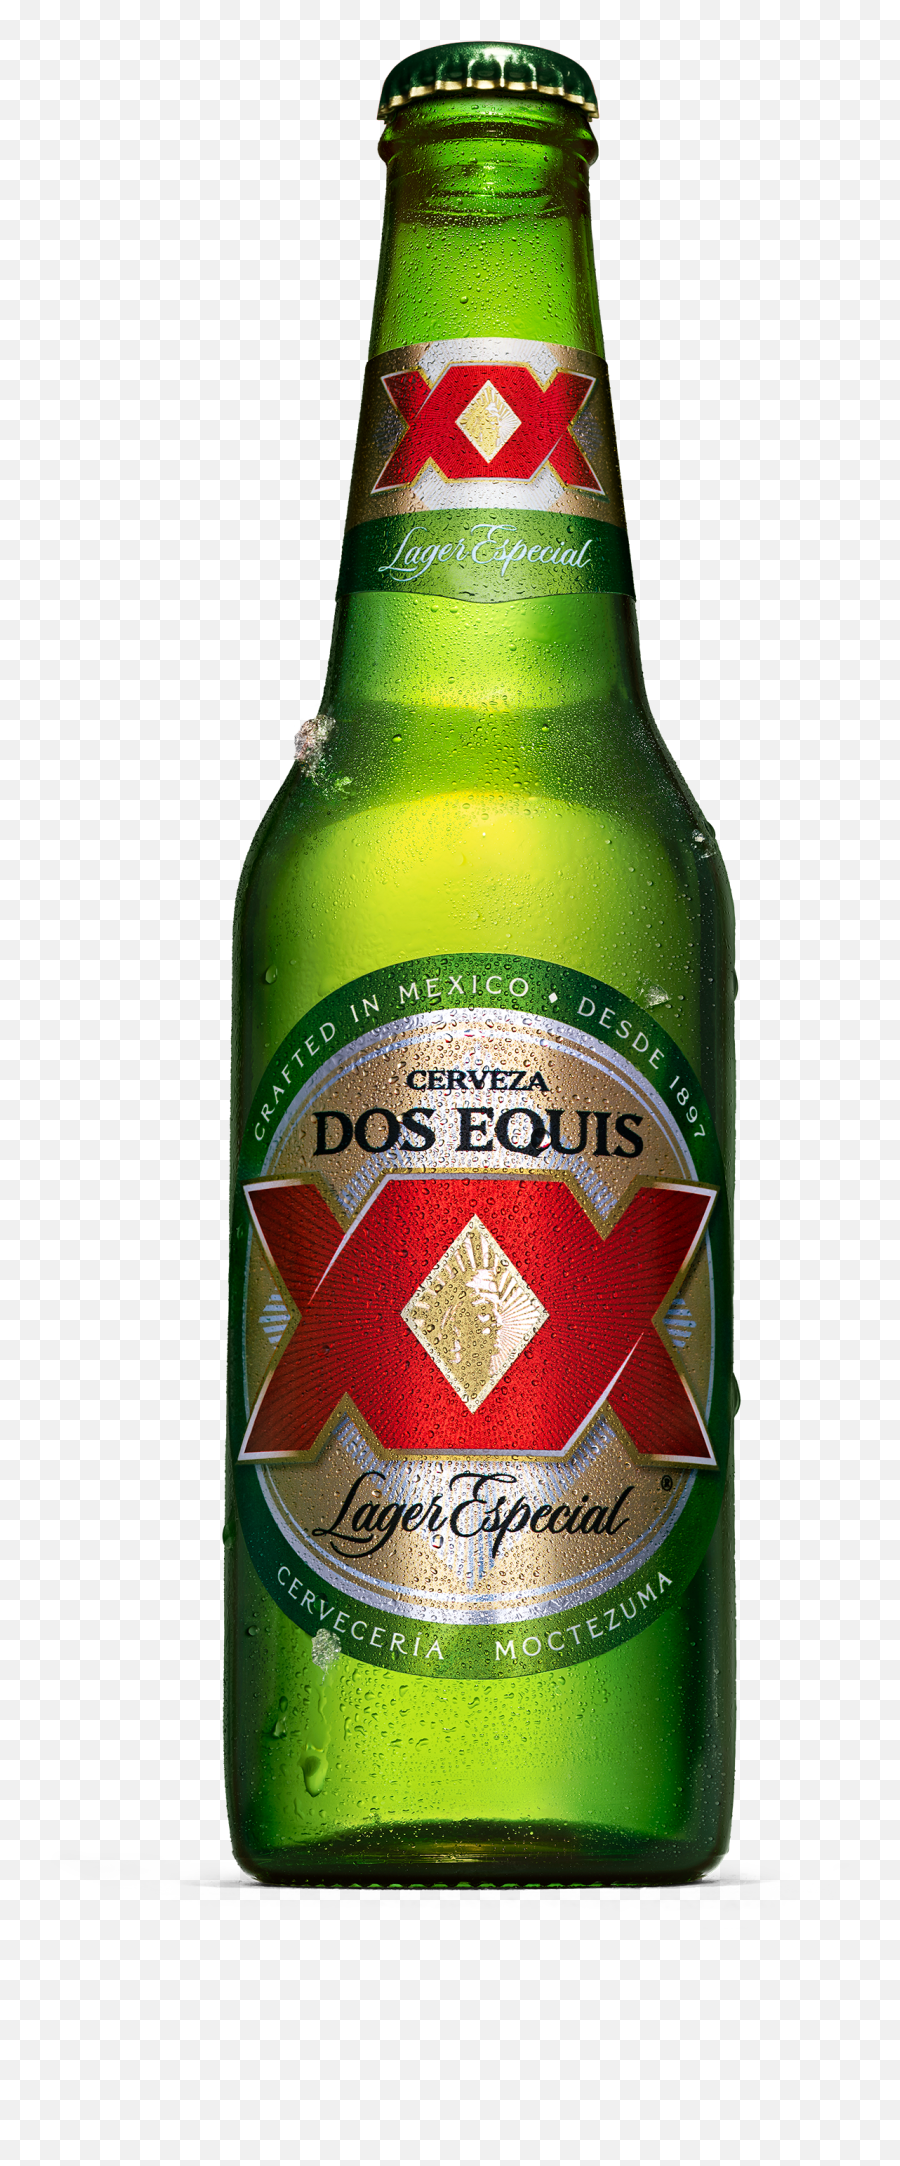 Dos Equis Lager - Beer Bottle Png,Modelo Beer Logo